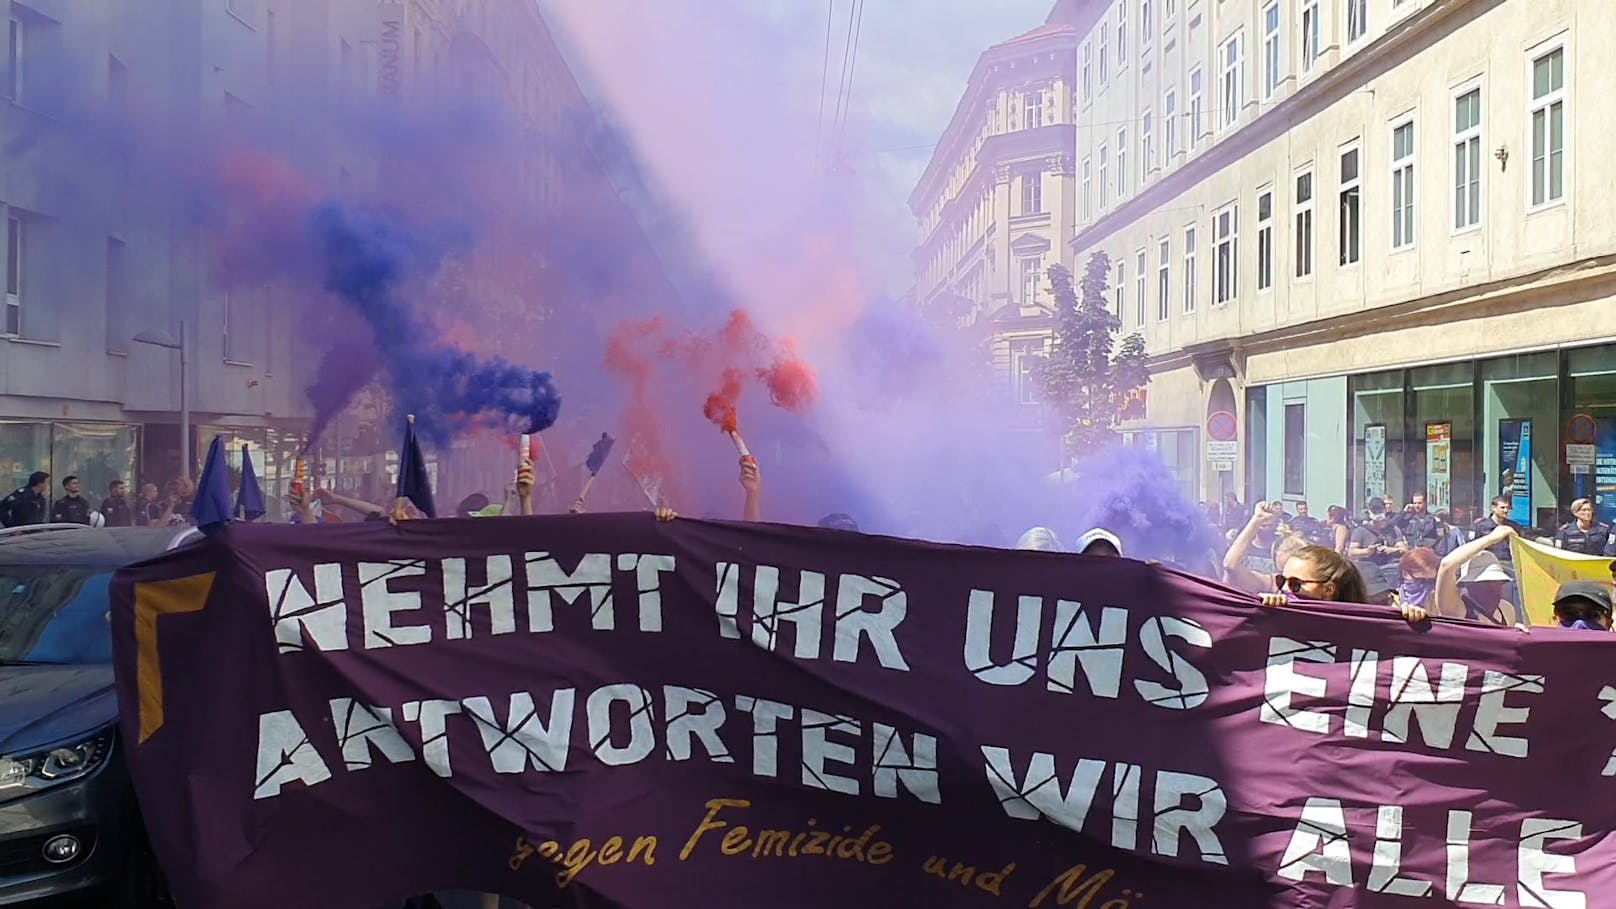 Am Samstag demonstrierte die "Radikale Linke" in Favoriten gegen Männergewalt.